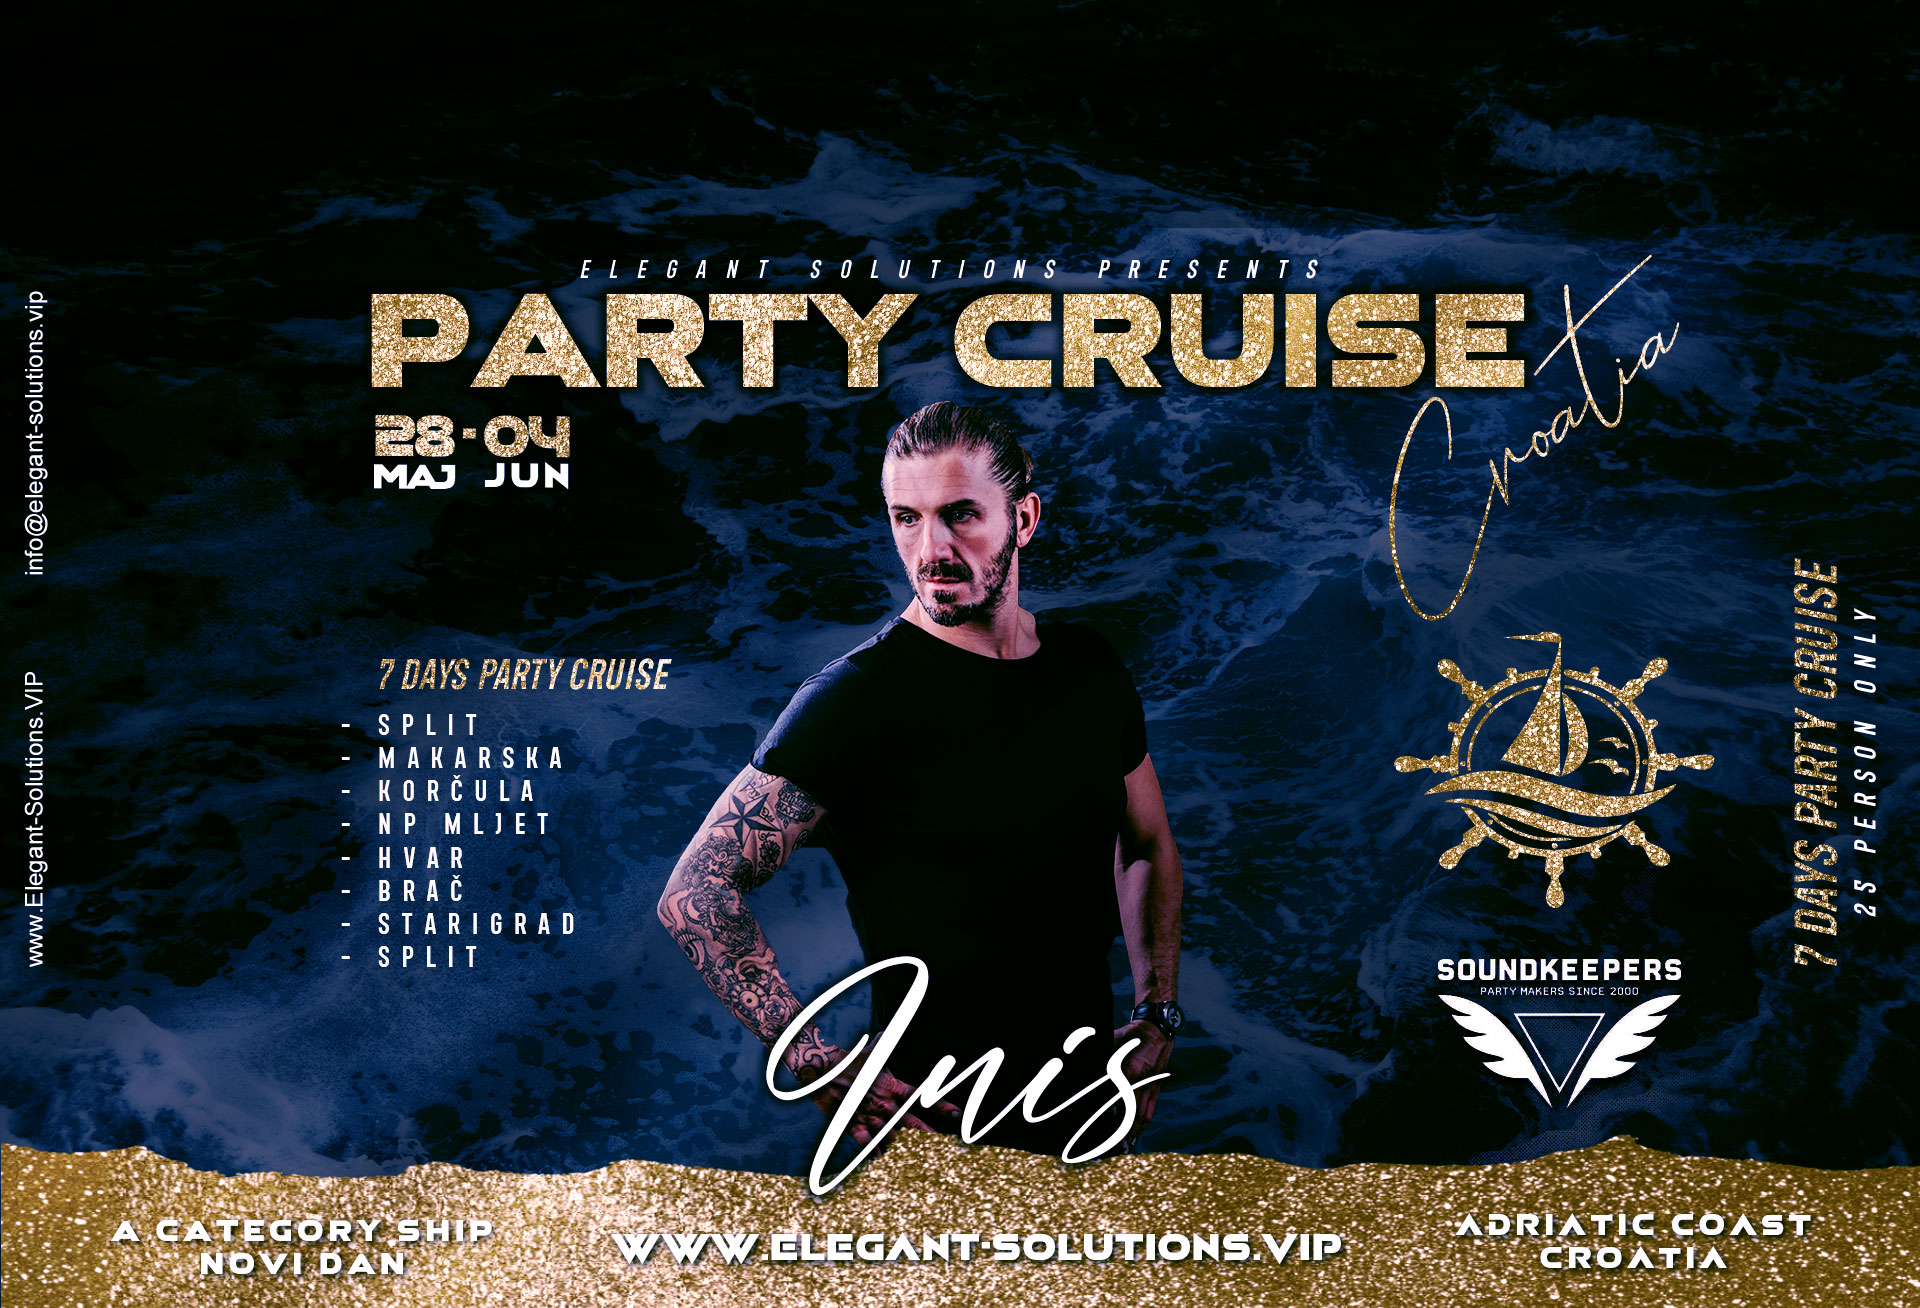 Party Cruise Croatia - 7 Days cruising Croatia coast